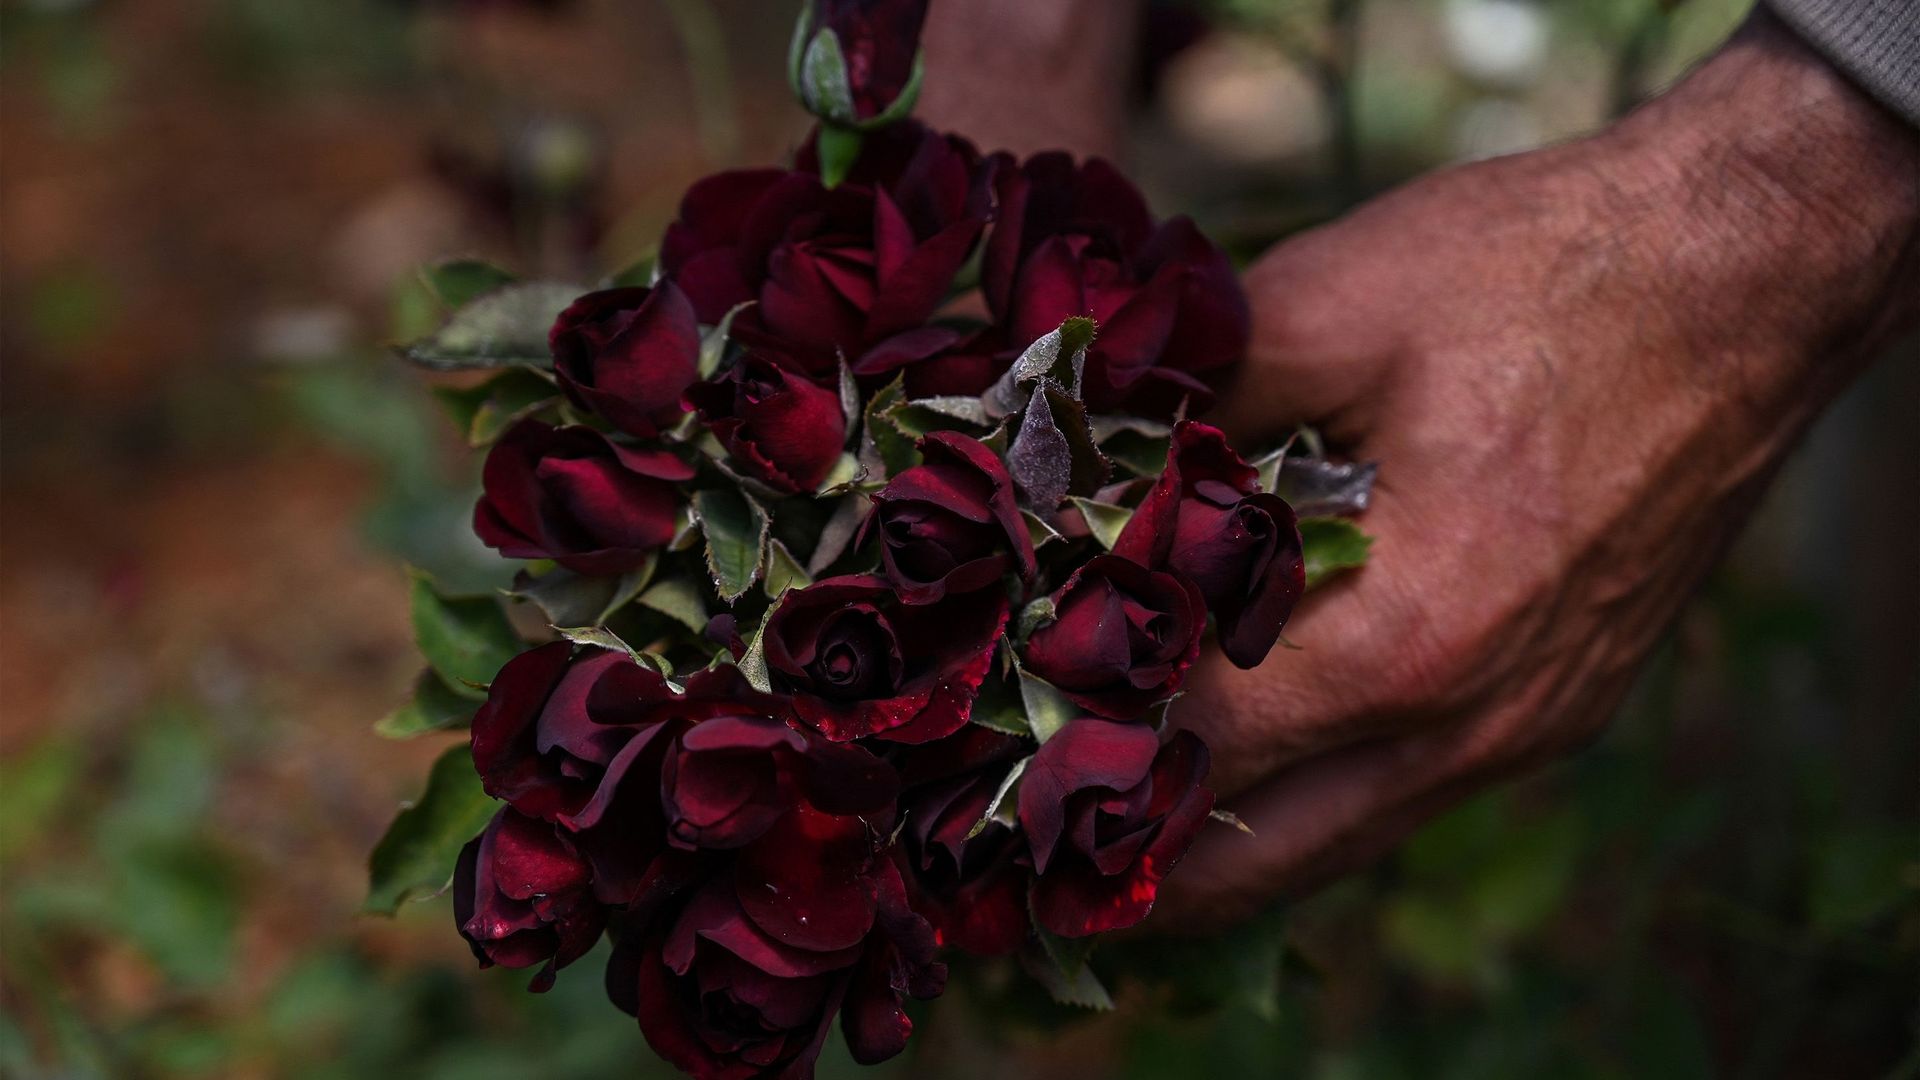 Noires et vertes, les mystères des roses turques sauvées des eaux.